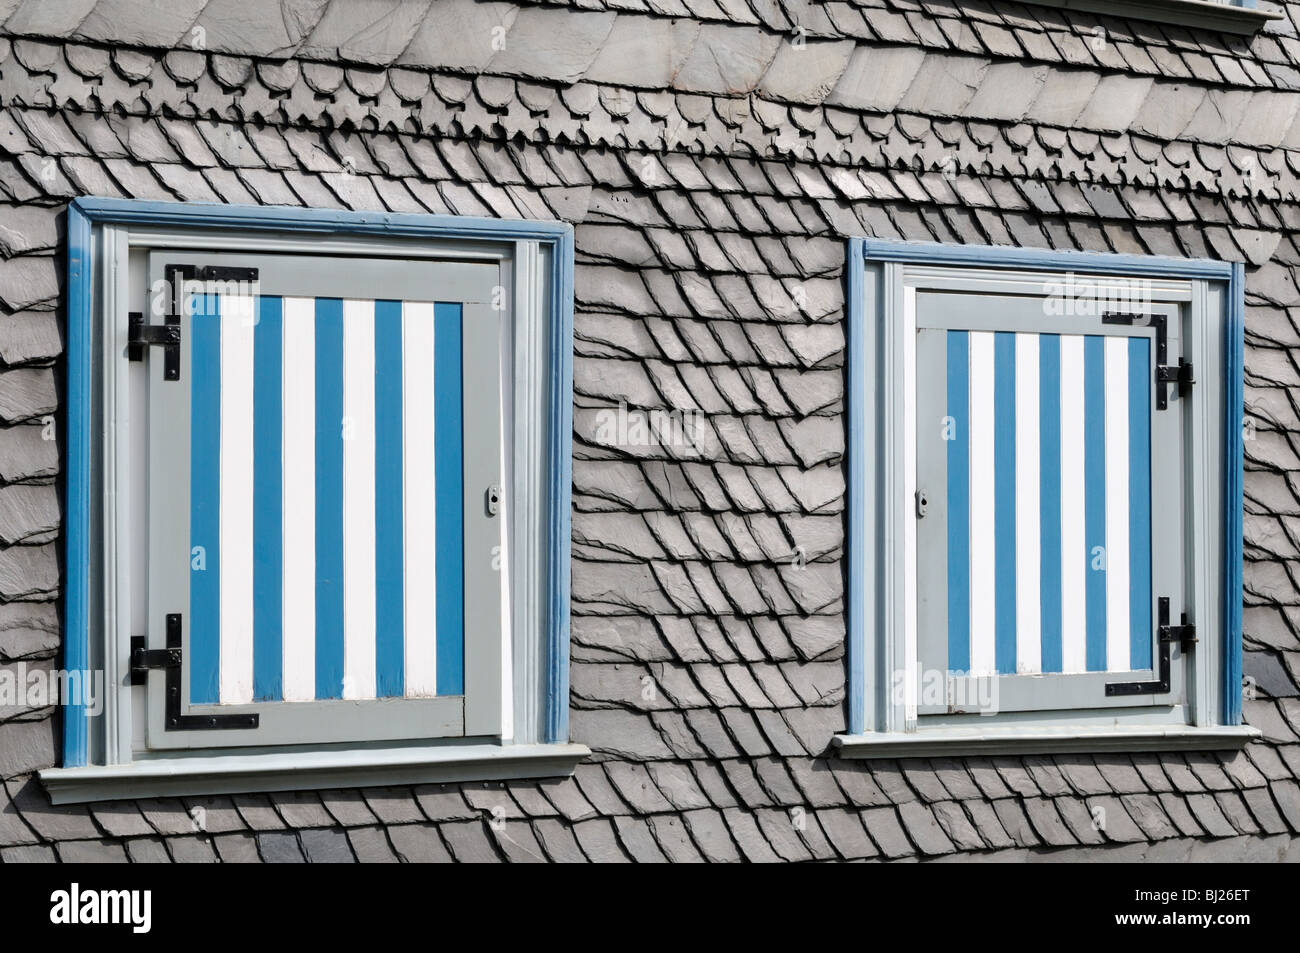 Haus Mit Schieferfassade Und Fensterläden, Goslar, Deutschland. -Haus mit Schiefer Fassade und Fensterläden, Goslar, Deutschland. Stockfoto